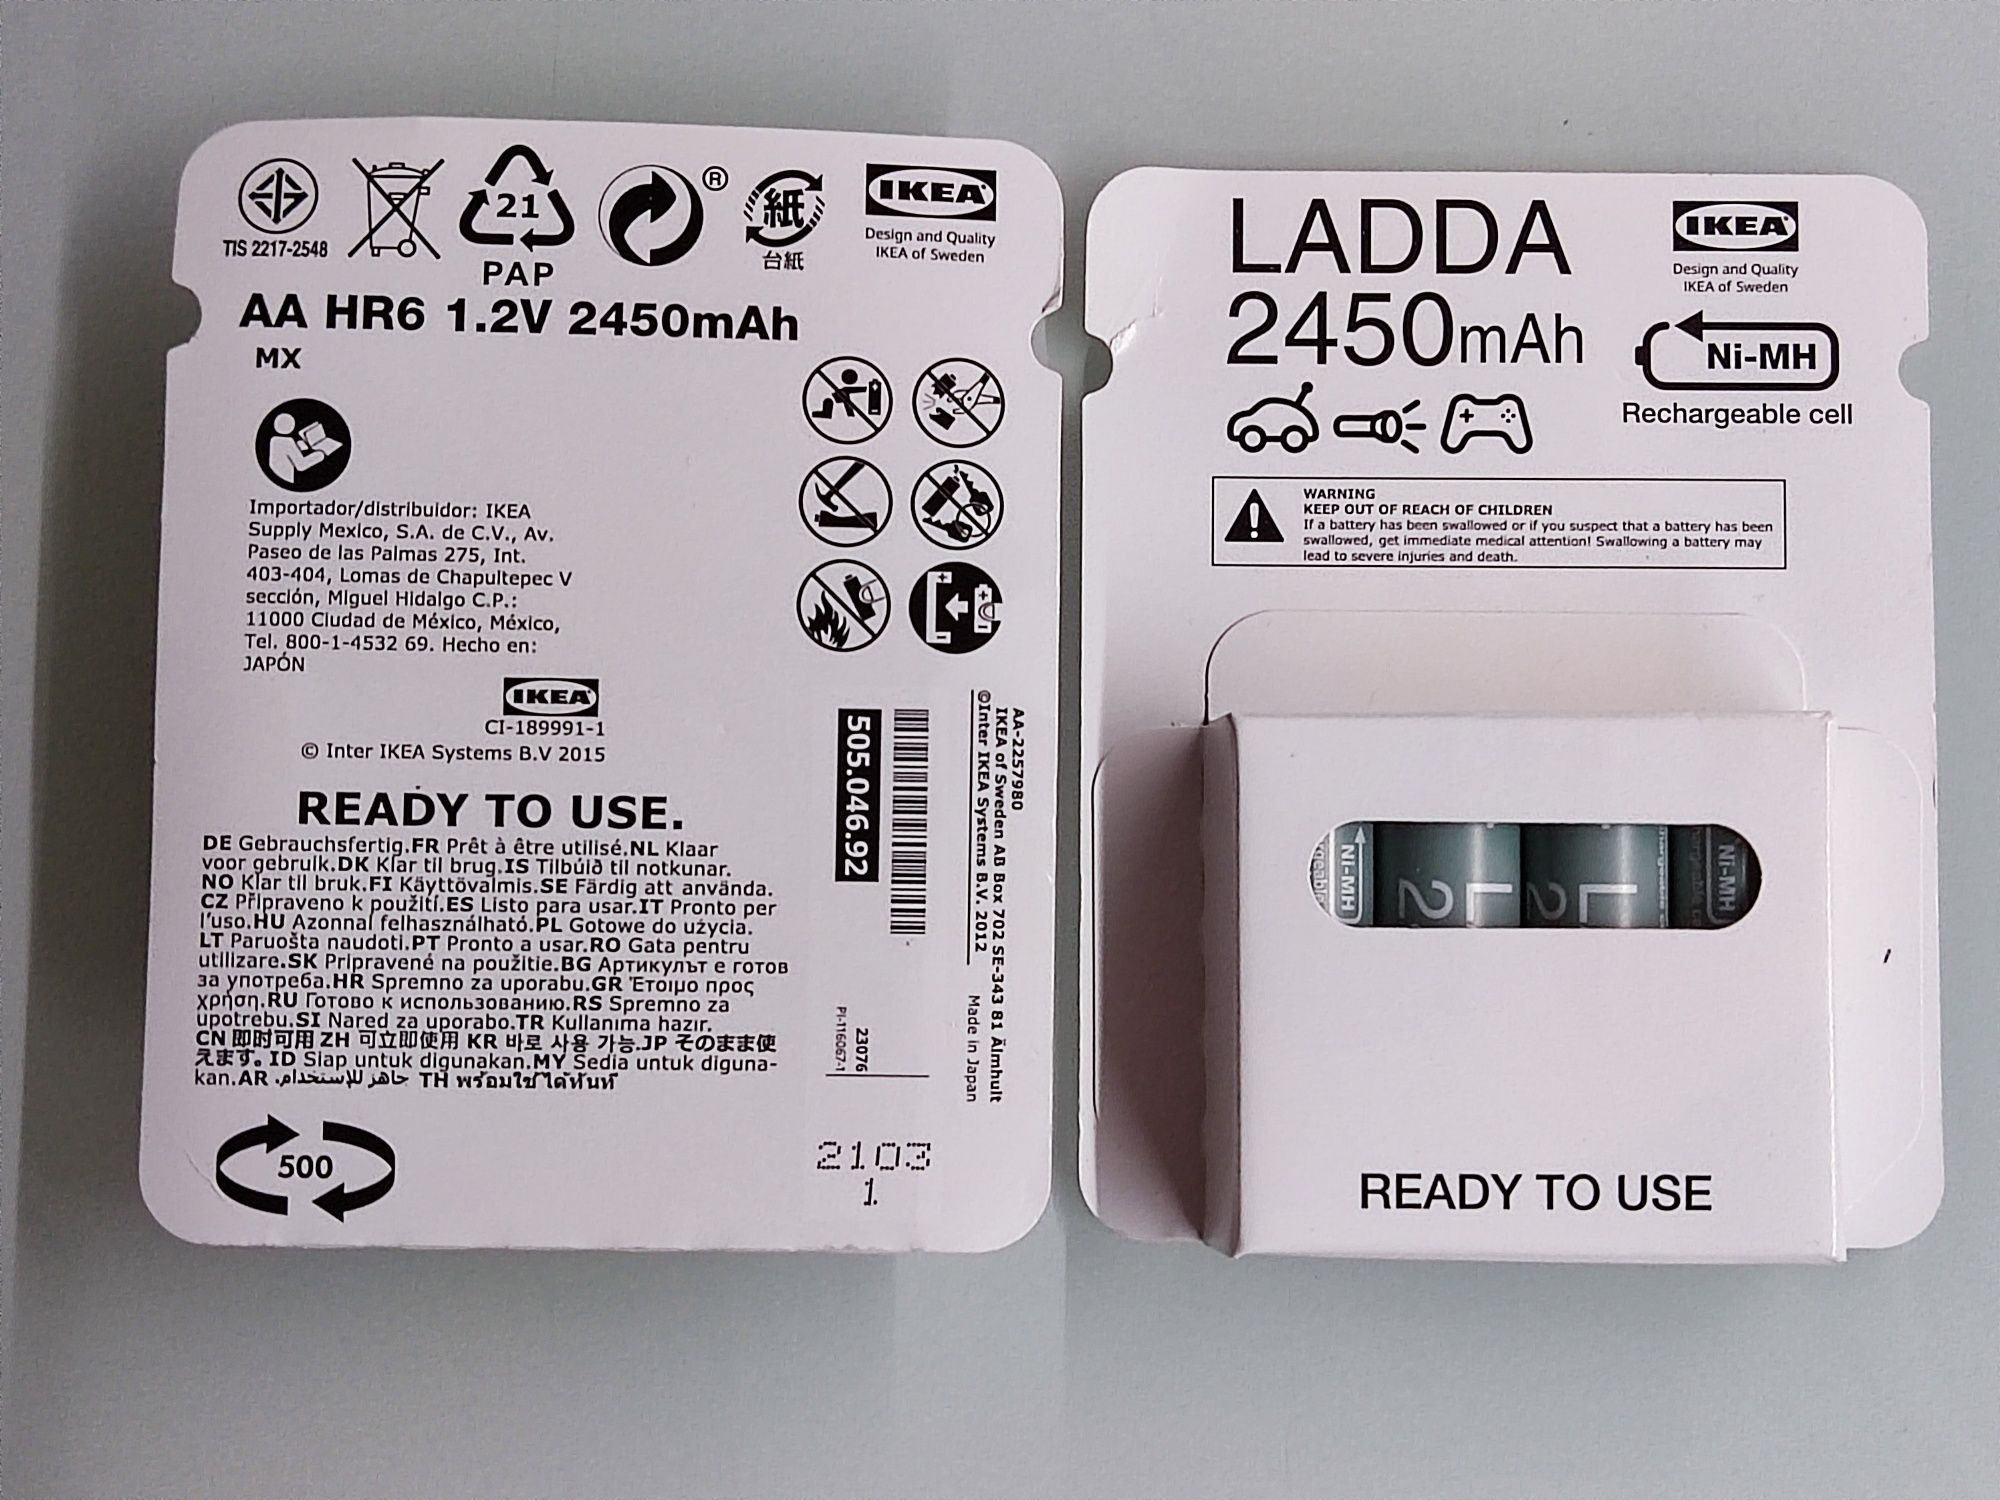 Acumulatori LADDA reincarcabili AA baterie R6 Noi Panasonic enelop pro